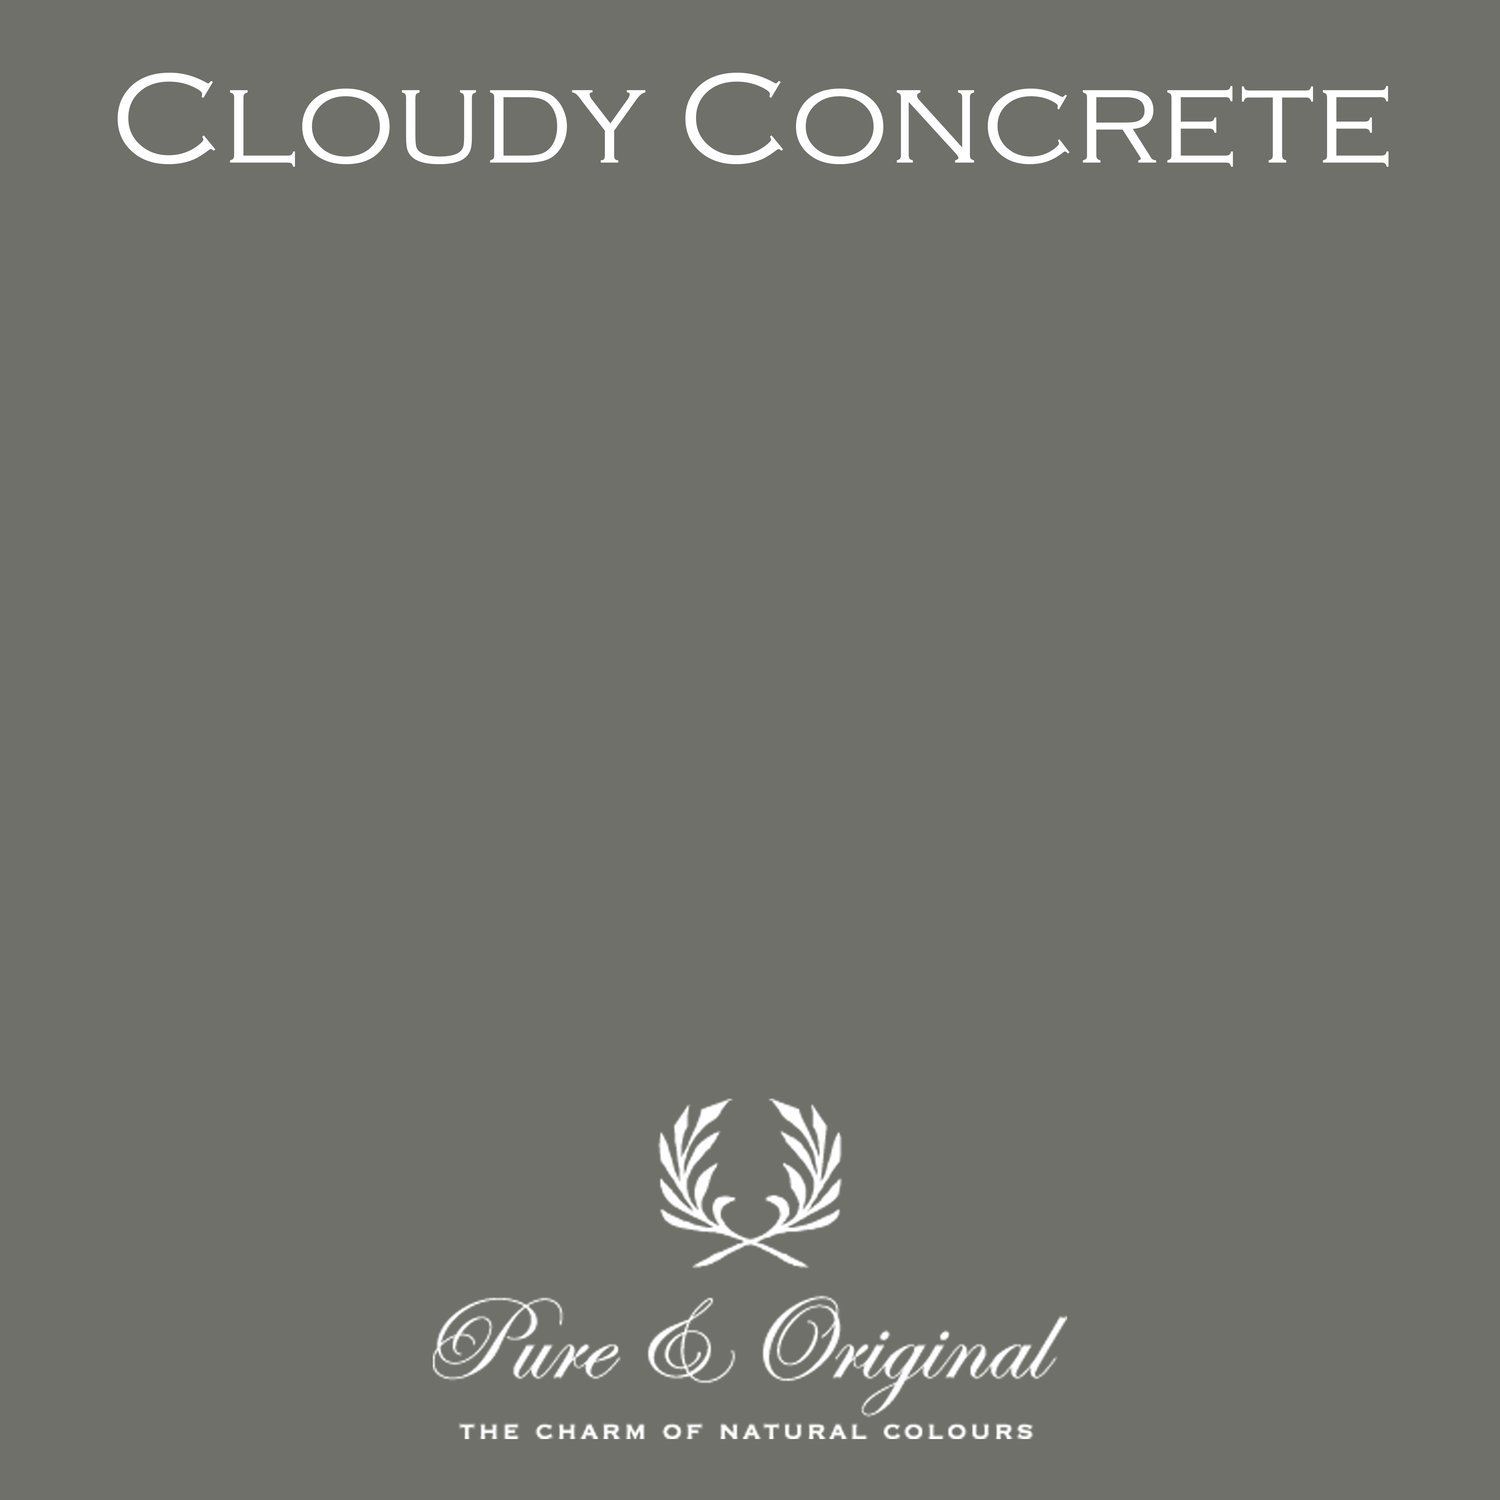 Cloudy Concrete Classico